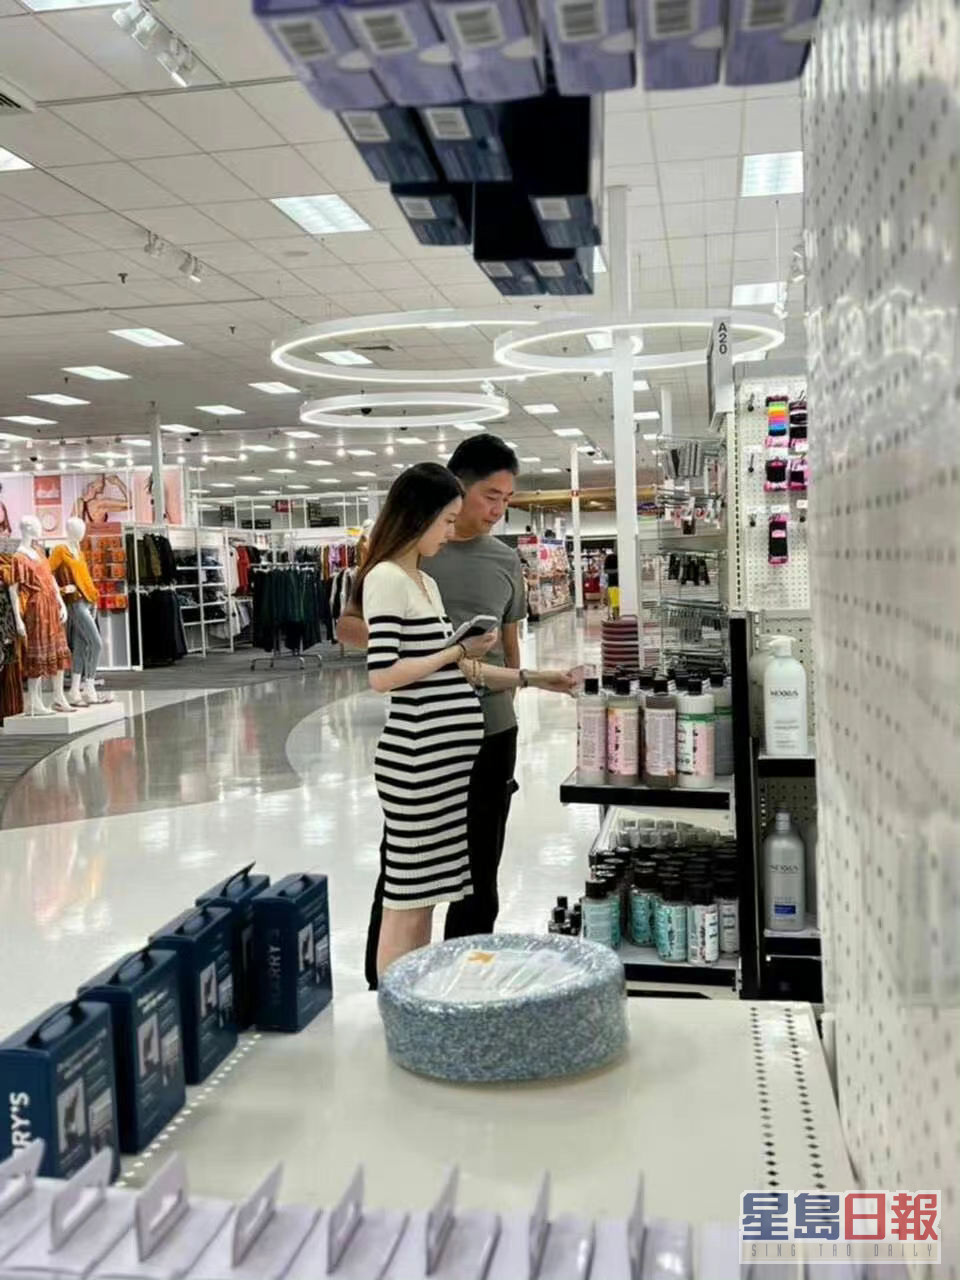 劉強東早前被影到與妻章澤天在美國逛超市。網圖